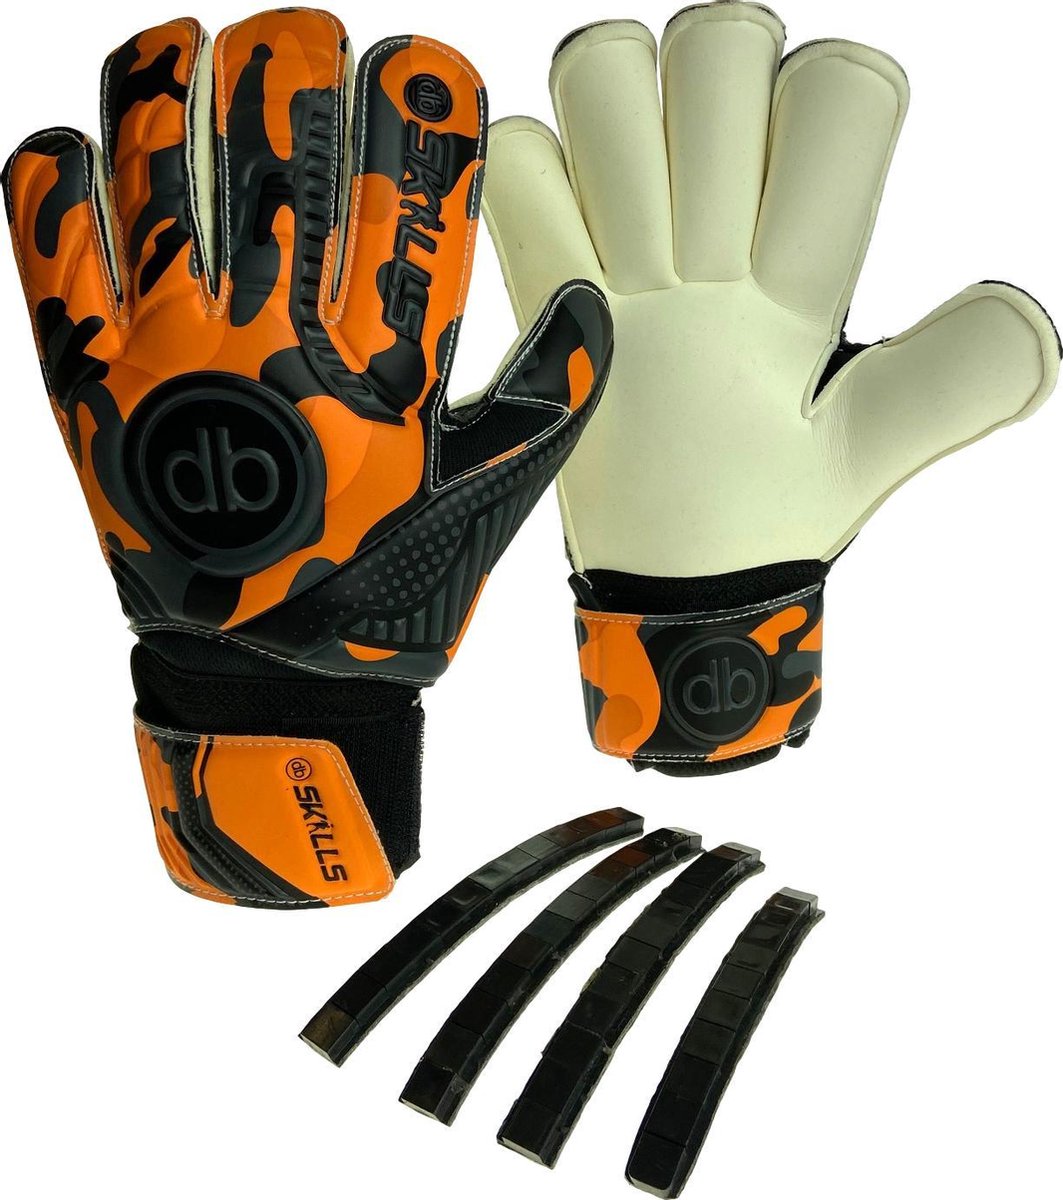 Keepershandschoenen db SKILLS Orange Camo maat 6 - Oranje : camouflage - jeugd keepershandschoen - Verwijderbare fingersave